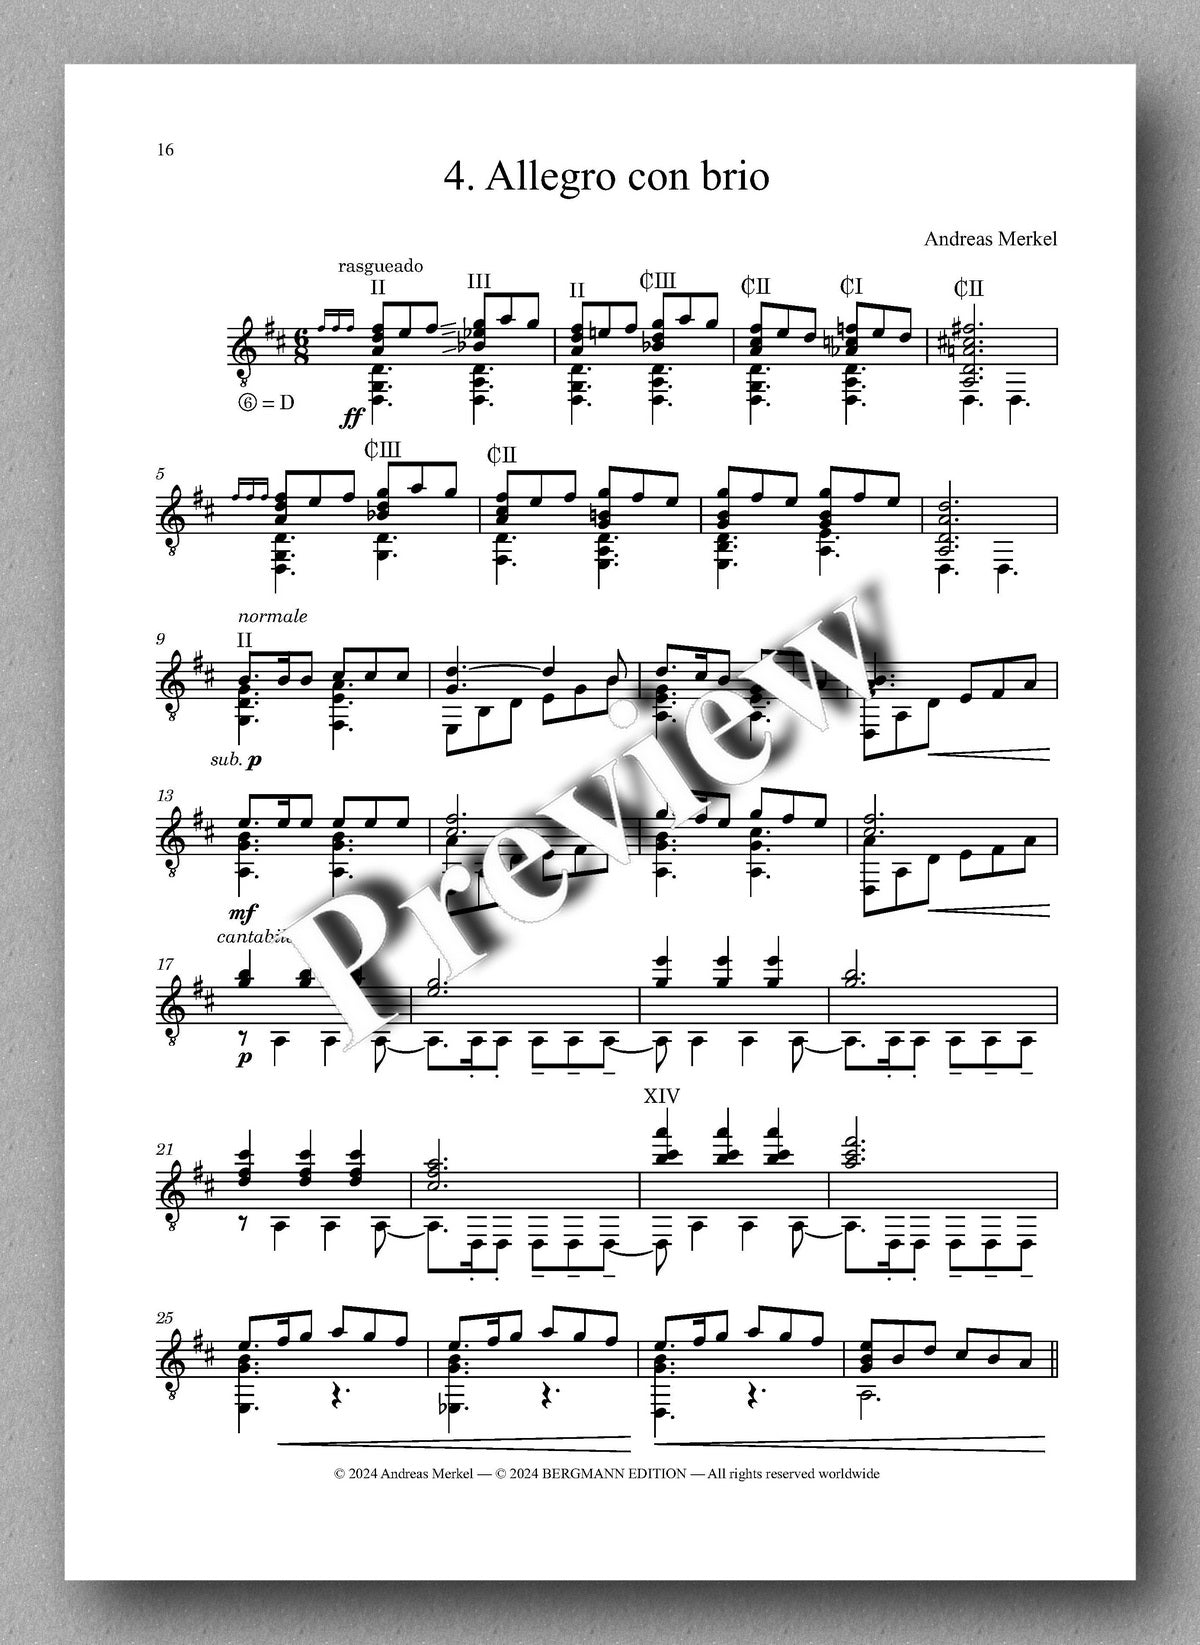 Andreas Merkel, Fantasía en cuatro movimentos, Op. 45 - preview of the music score 3